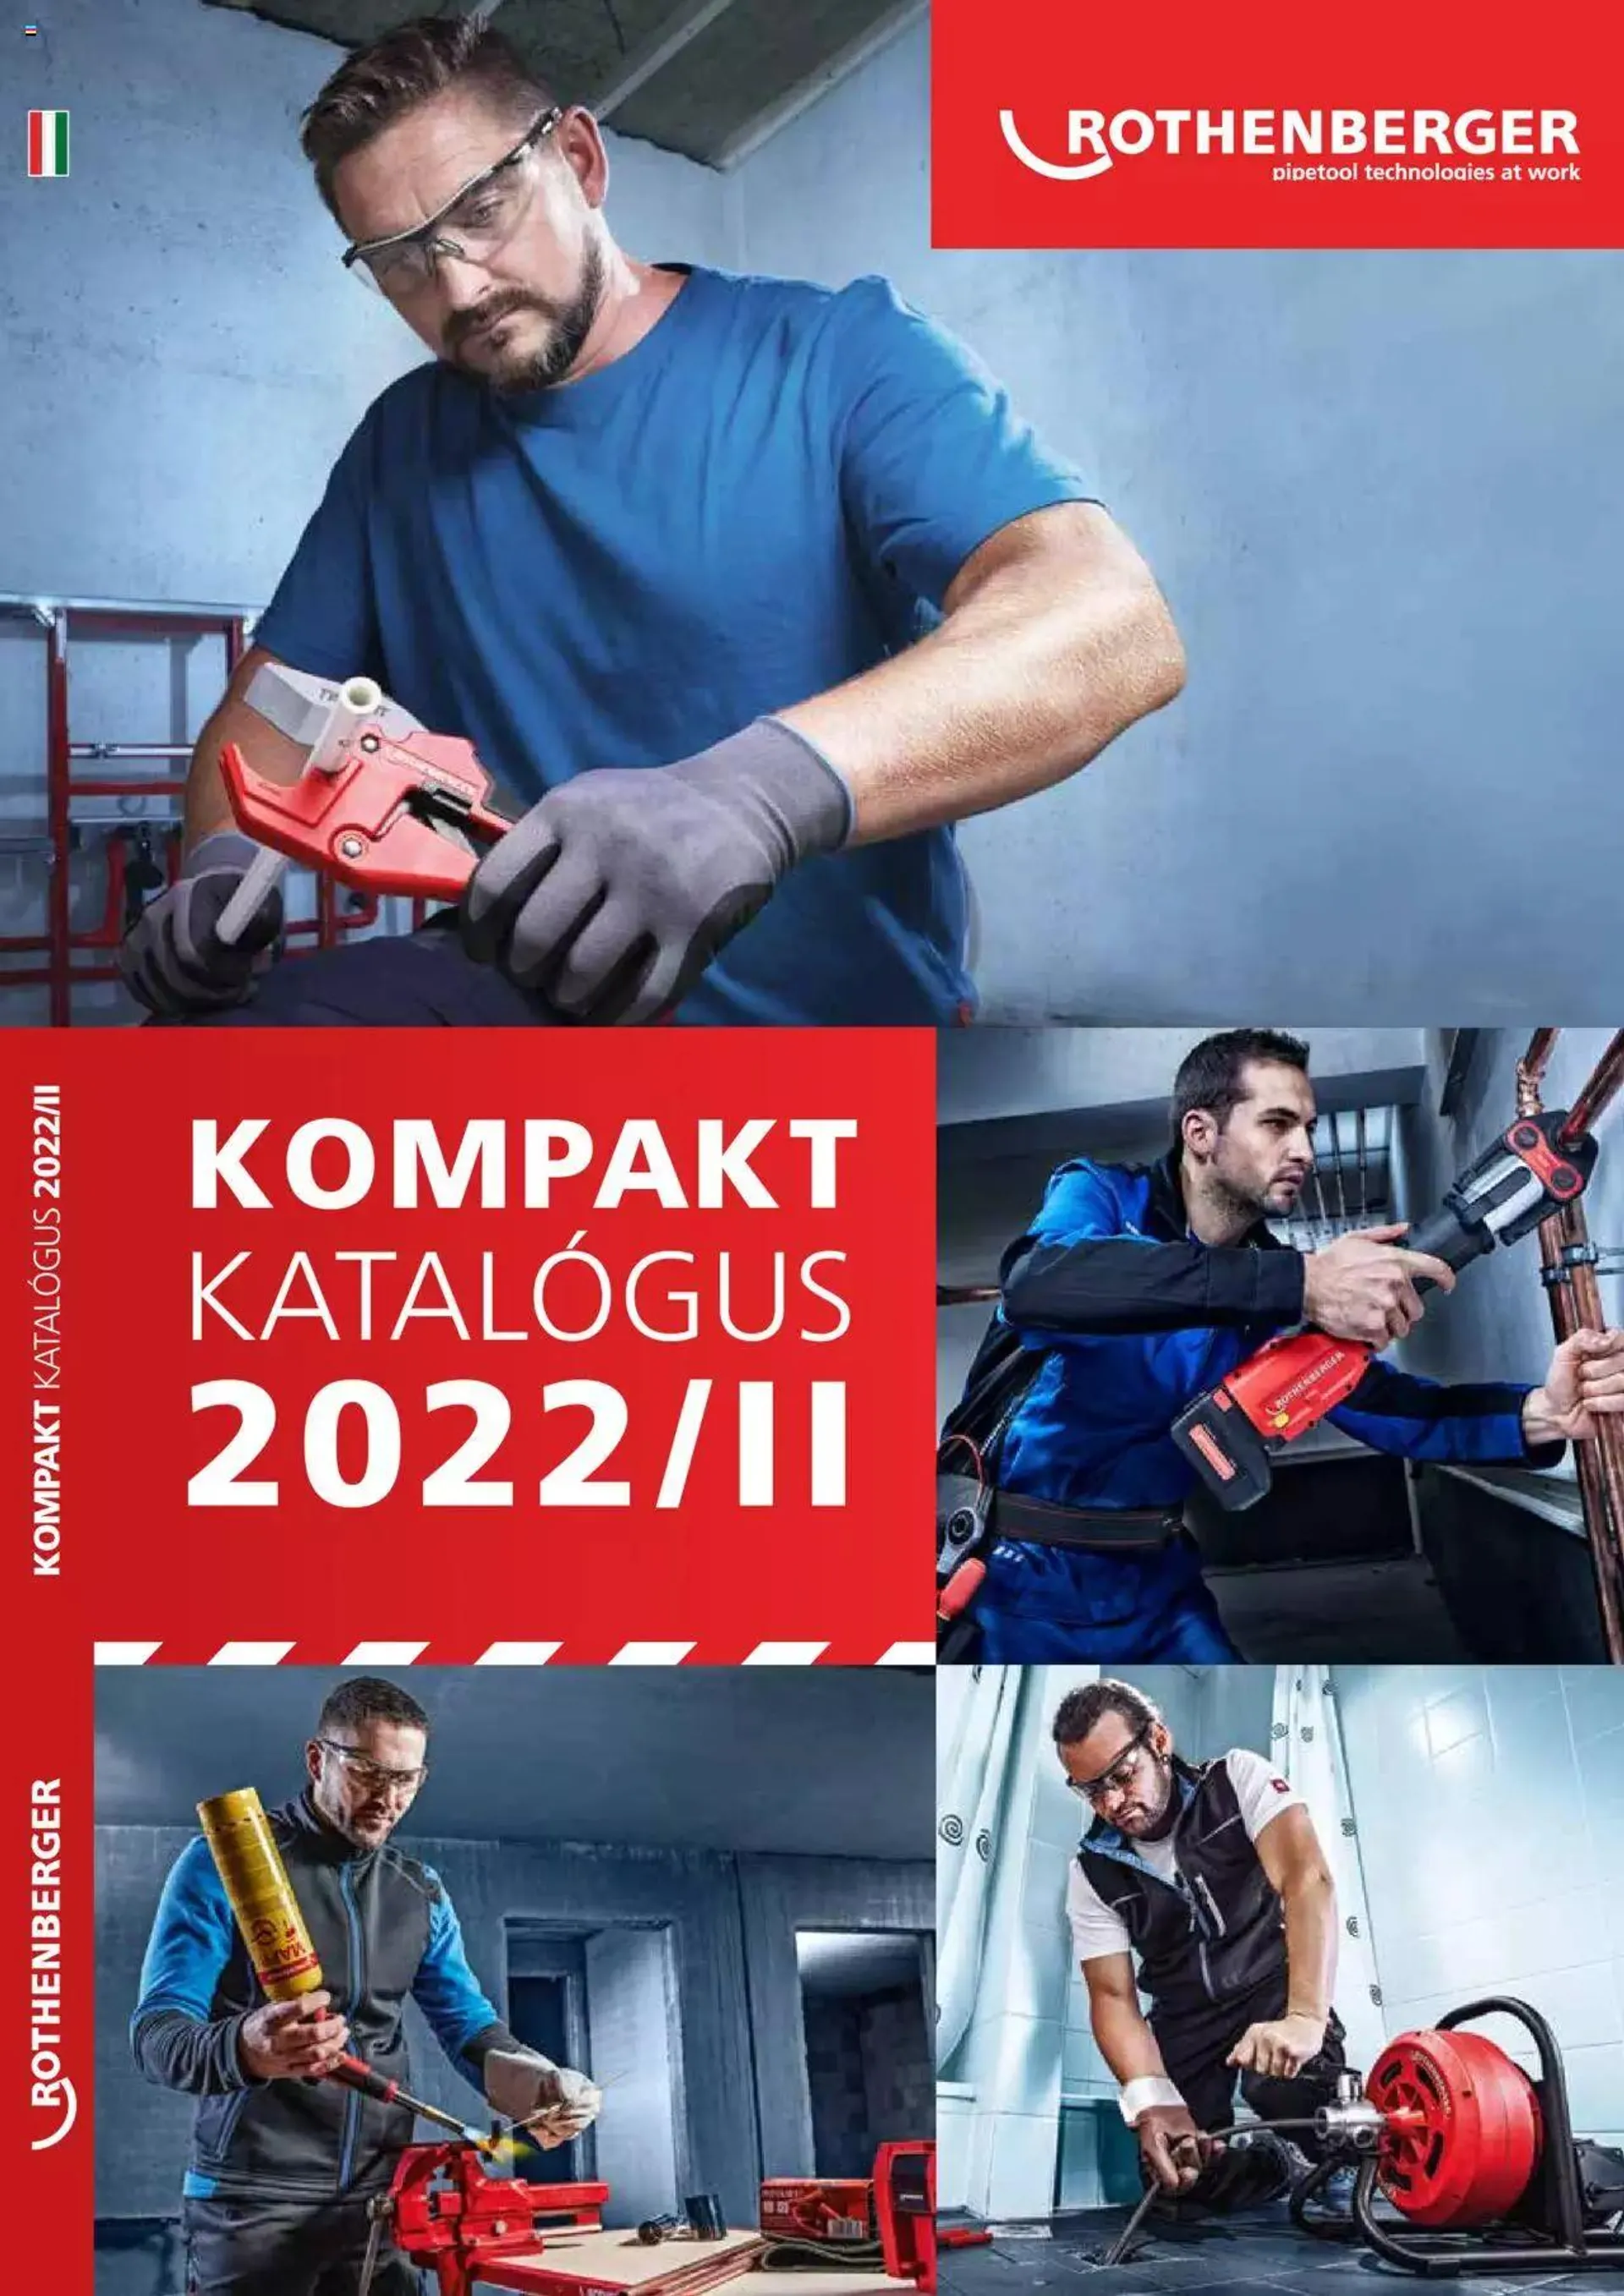 Rothenberger - Kompakt katalógus 2022/II - 0